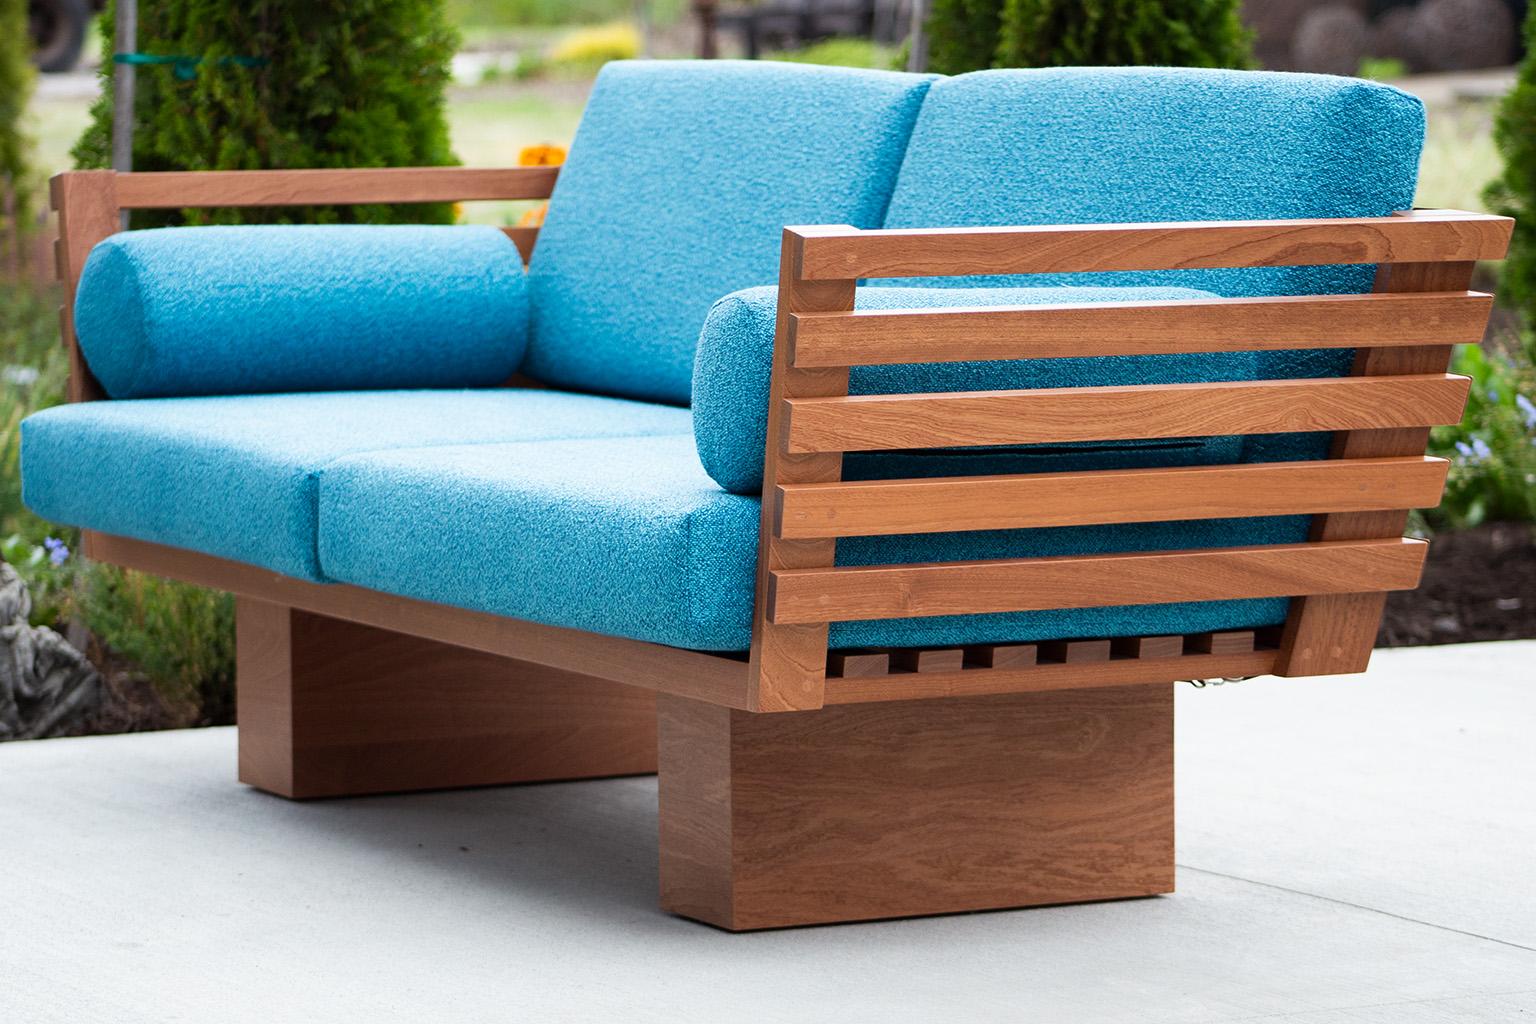 Dieses moderne Terrassenmöbel - Suelo Slatted Loveseat ist wunderschön in Ohio, USA, gefertigt. Diese Silhouette ist einfach, modern und schlank mit bequemen Rücken- und Sitzkissen. Der Holzrahmen ist für den Einsatz im Freien geeignet und mit einer